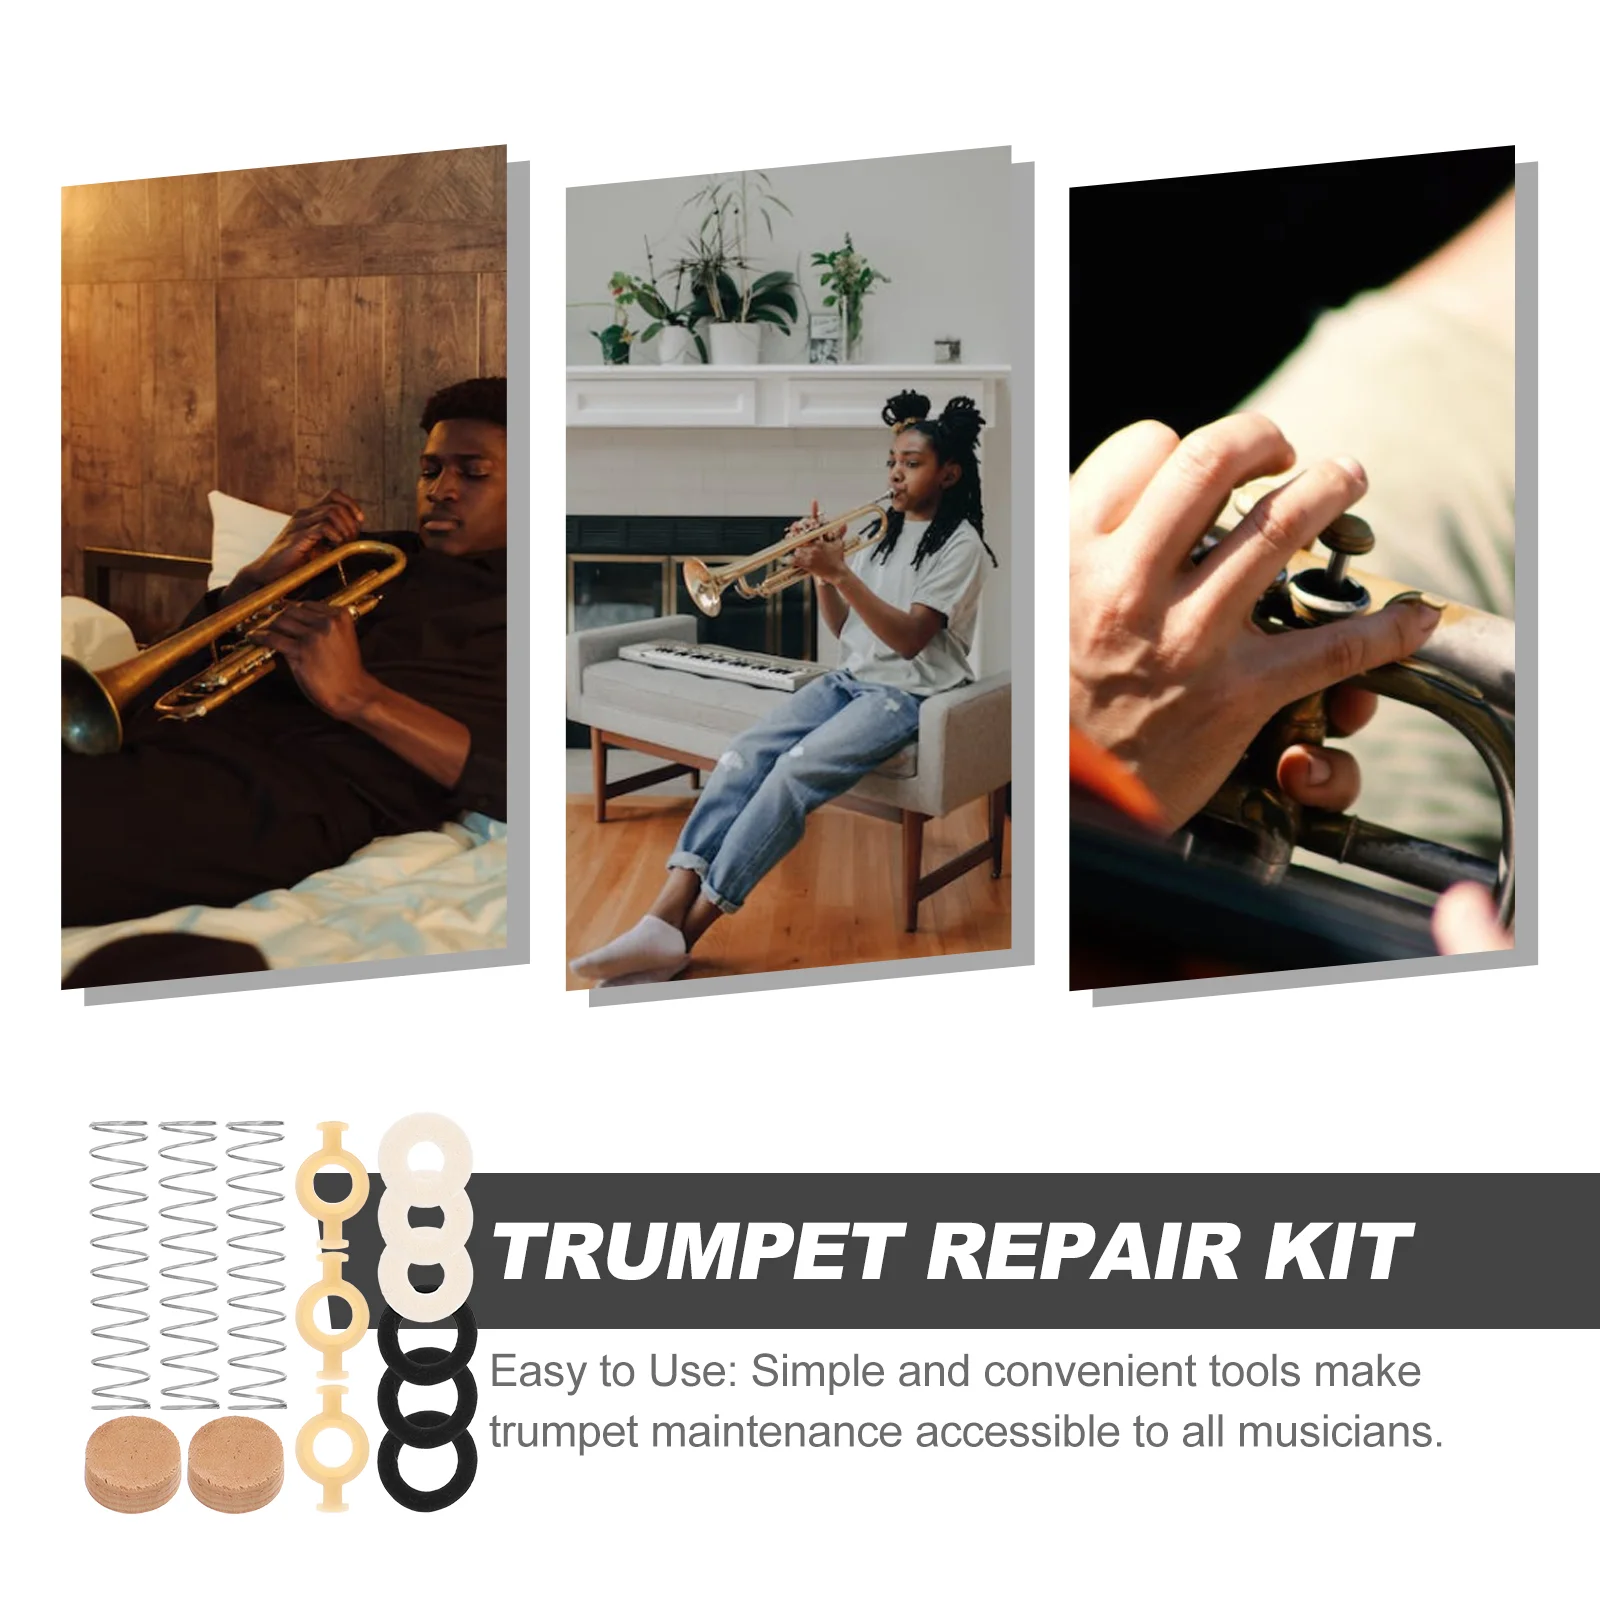 Trompet Vana tamir kiti Trompet Tampon Stoper supap kılavuzu Trompet keçe yıkayıcı Enstrüman Bakım Ağızlık Görüntü 1